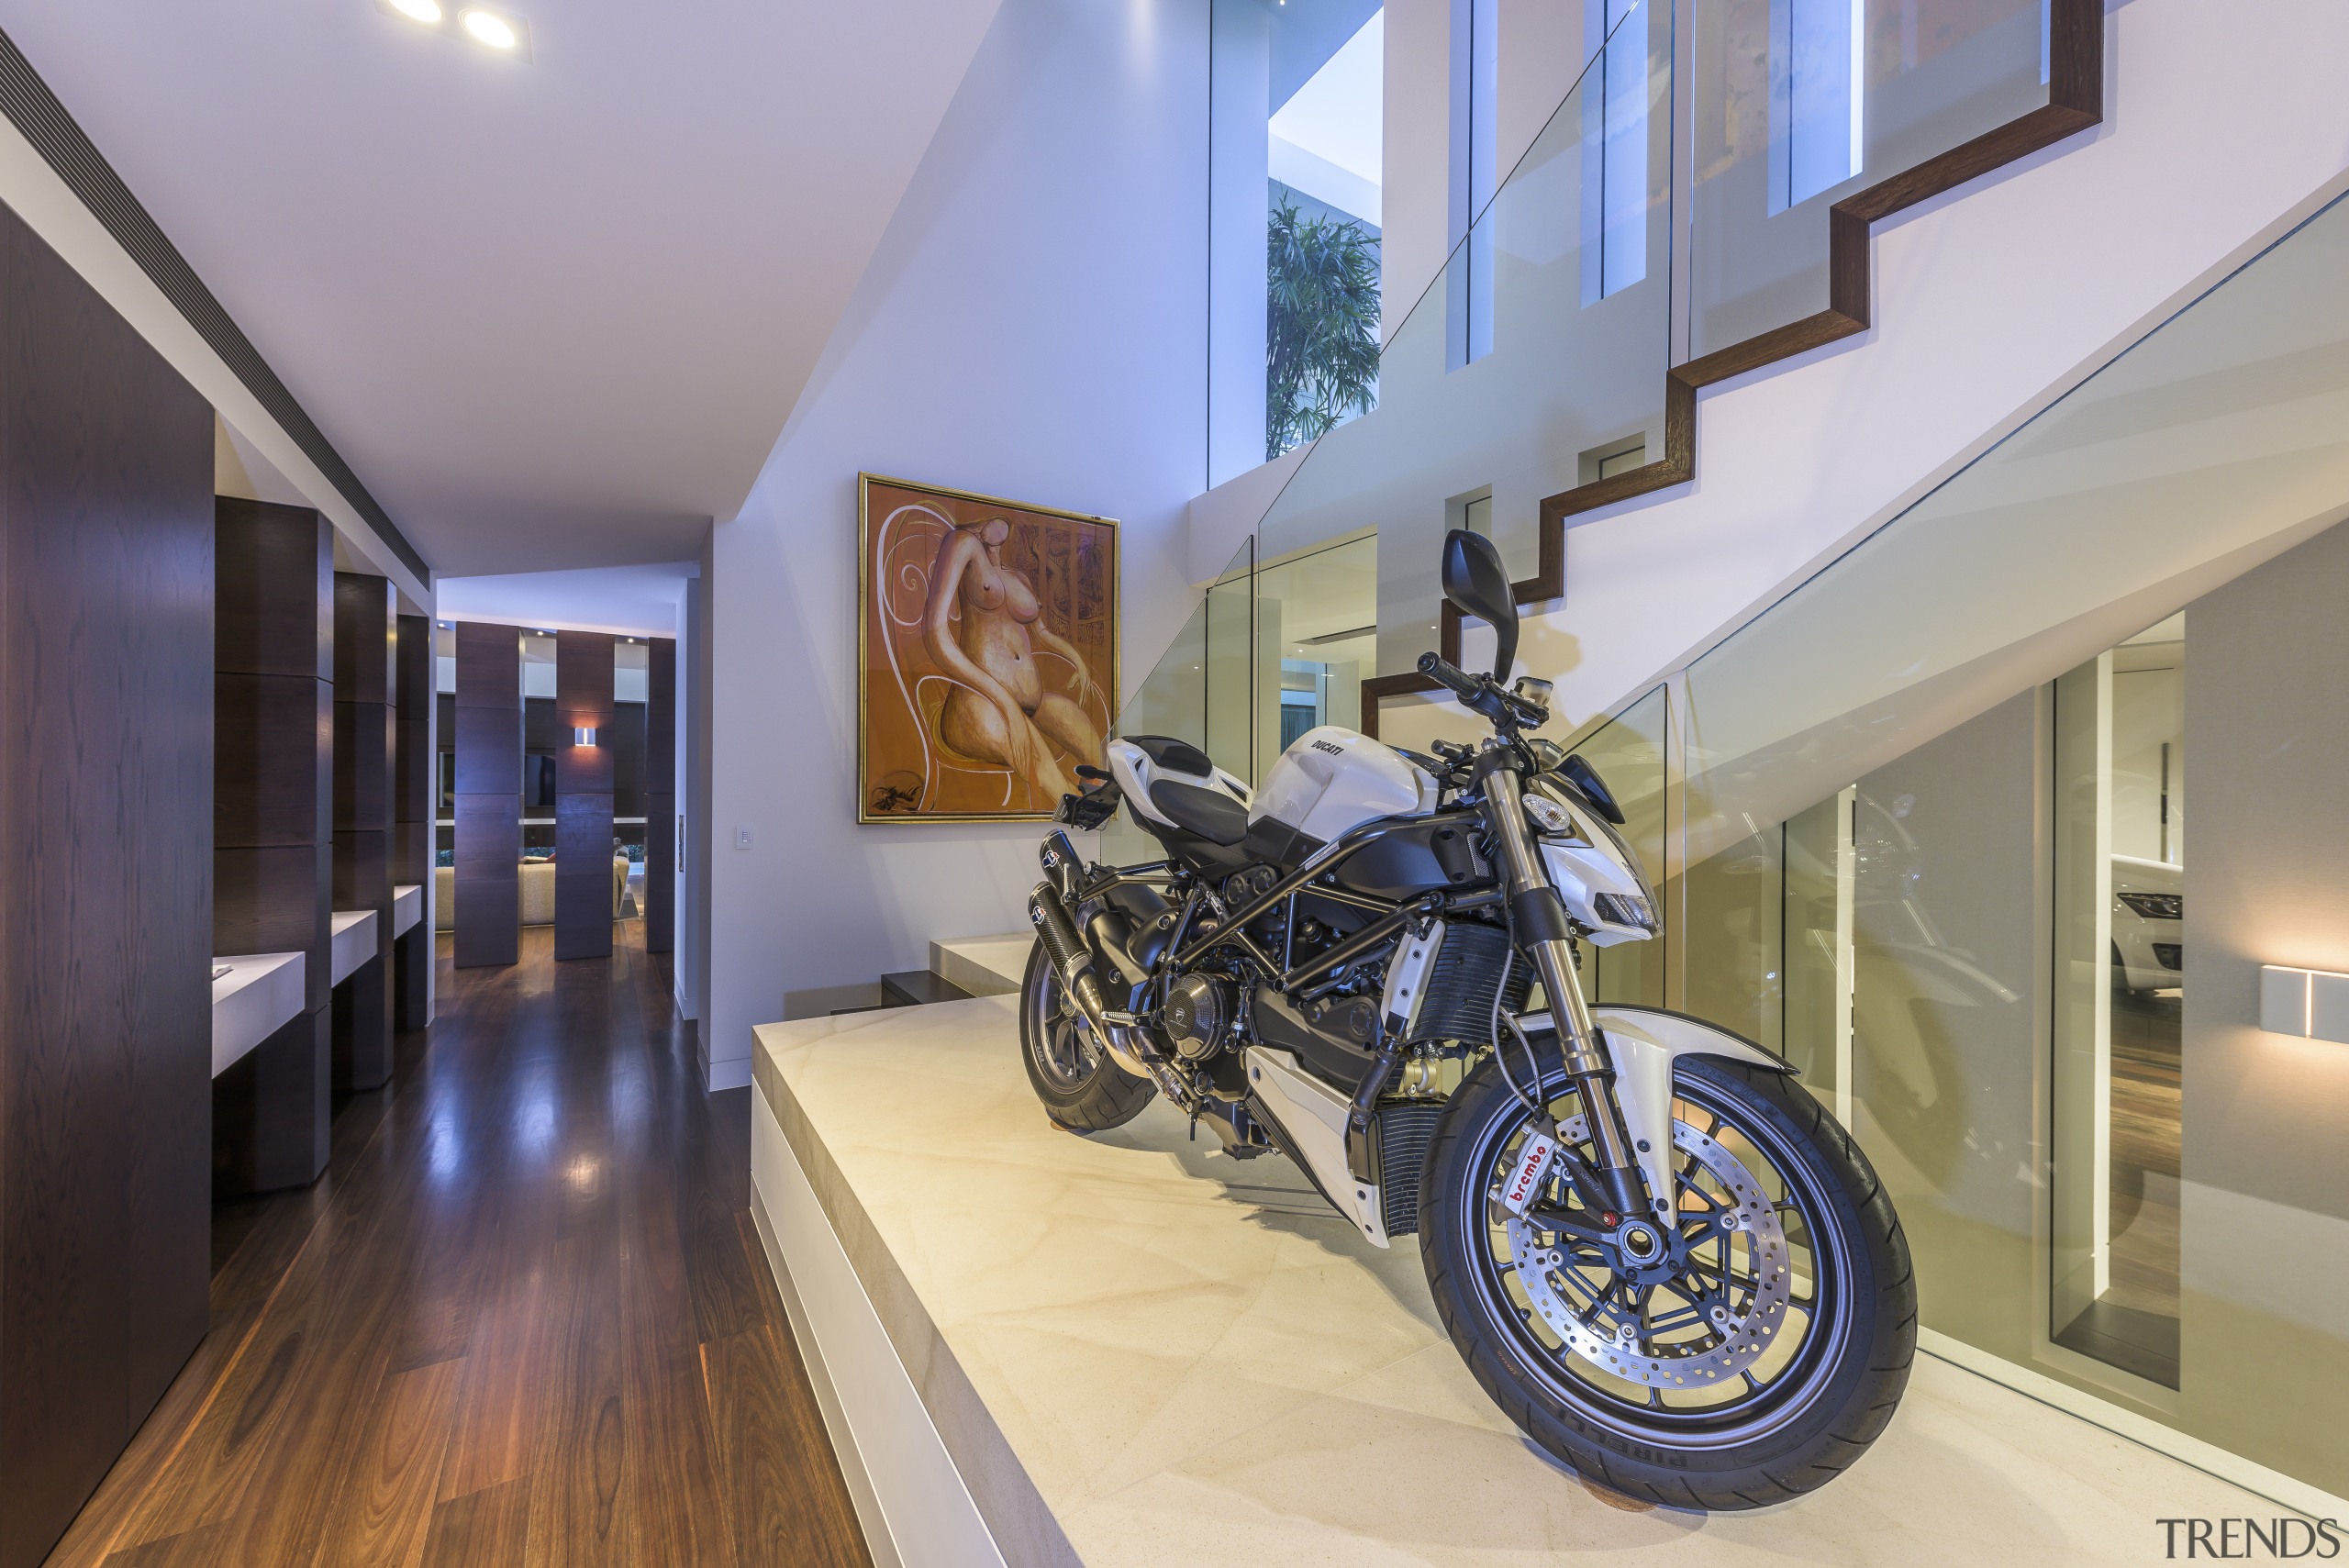 motorbike wallpaper for bedrooms,property,motorcycle,vehicle,building,floor